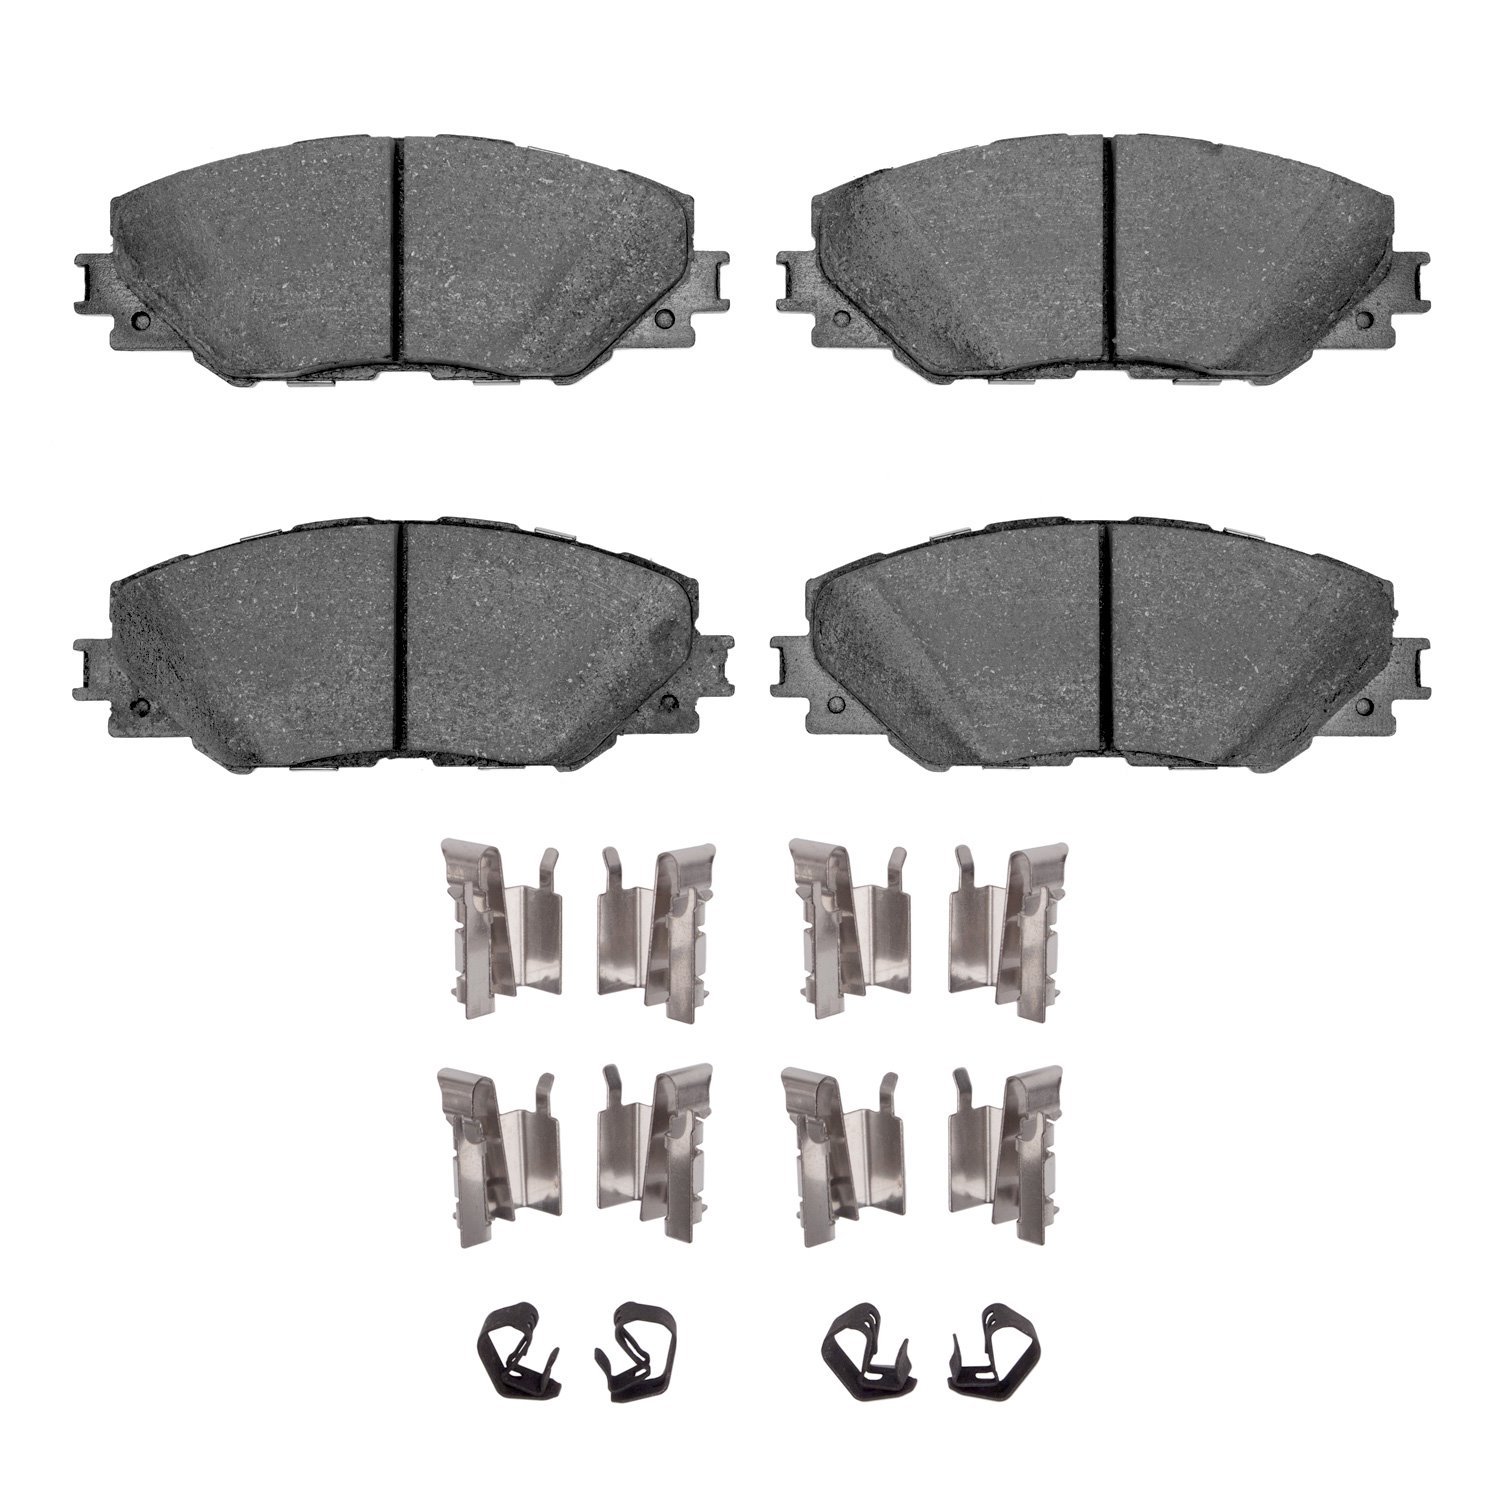 Ceramic Brake Pads & Hardware Kit, 2006-2020 Fits Multiple Makes/Models, Position: Front